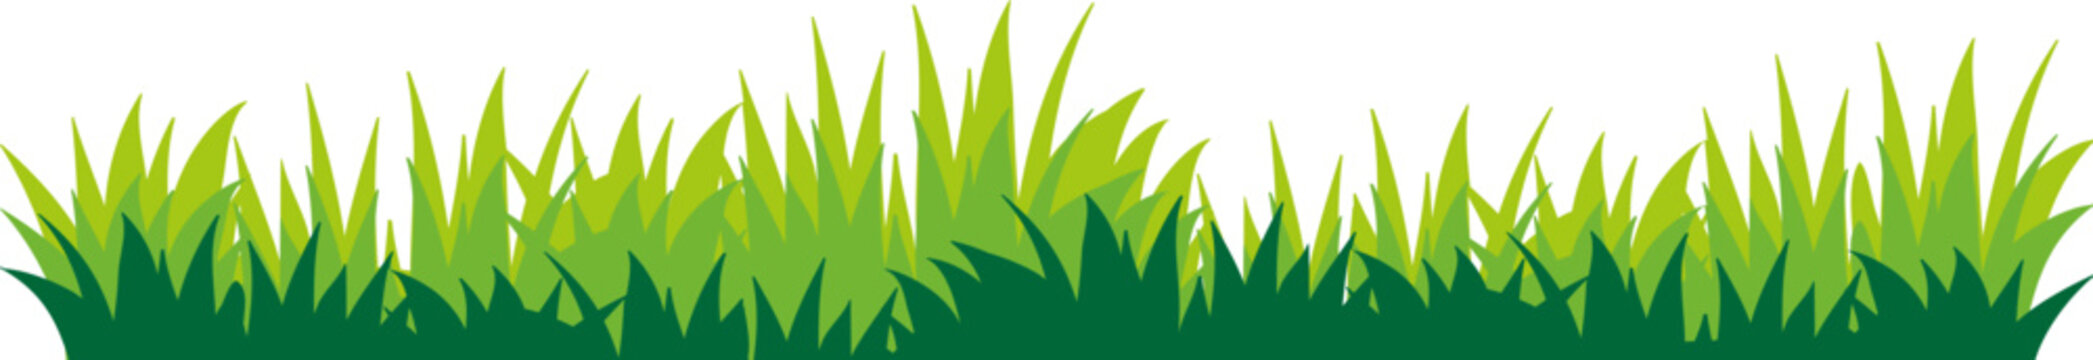 green grass illustration vector clipart